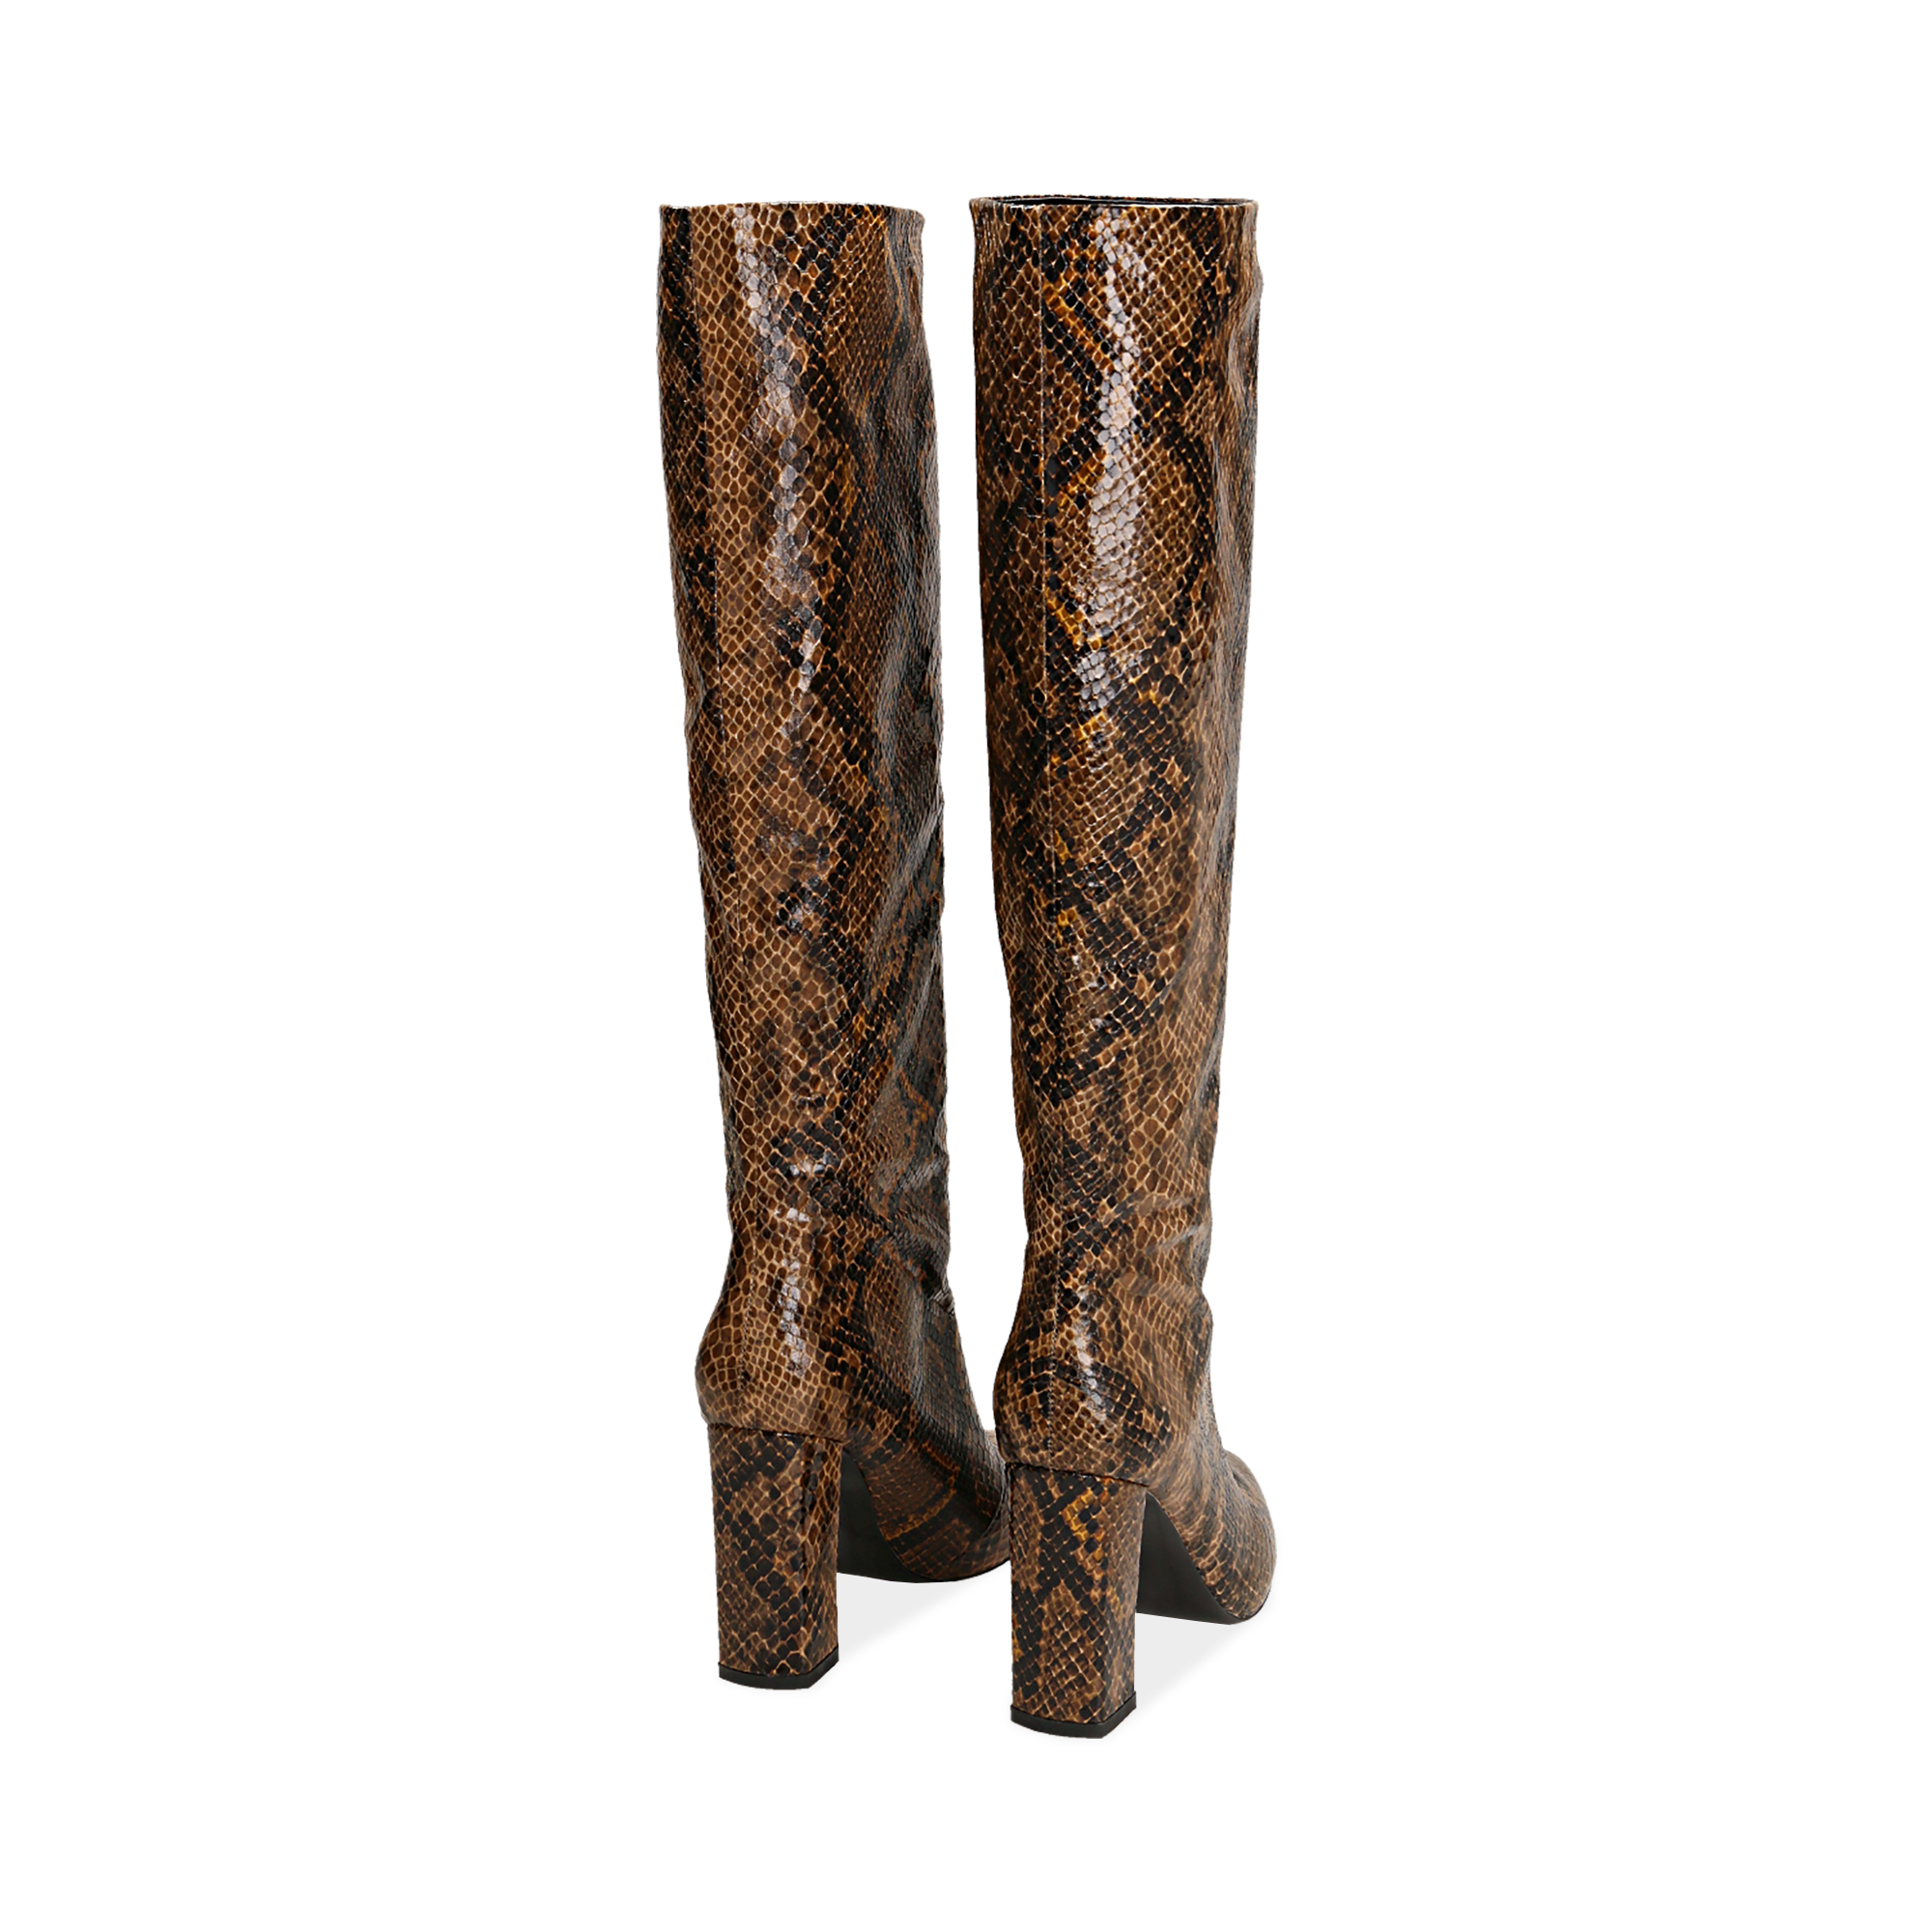 Stivali marroni in eco-pelle stampa pitone, tacco 9,5 cm | Primadonna  Collection